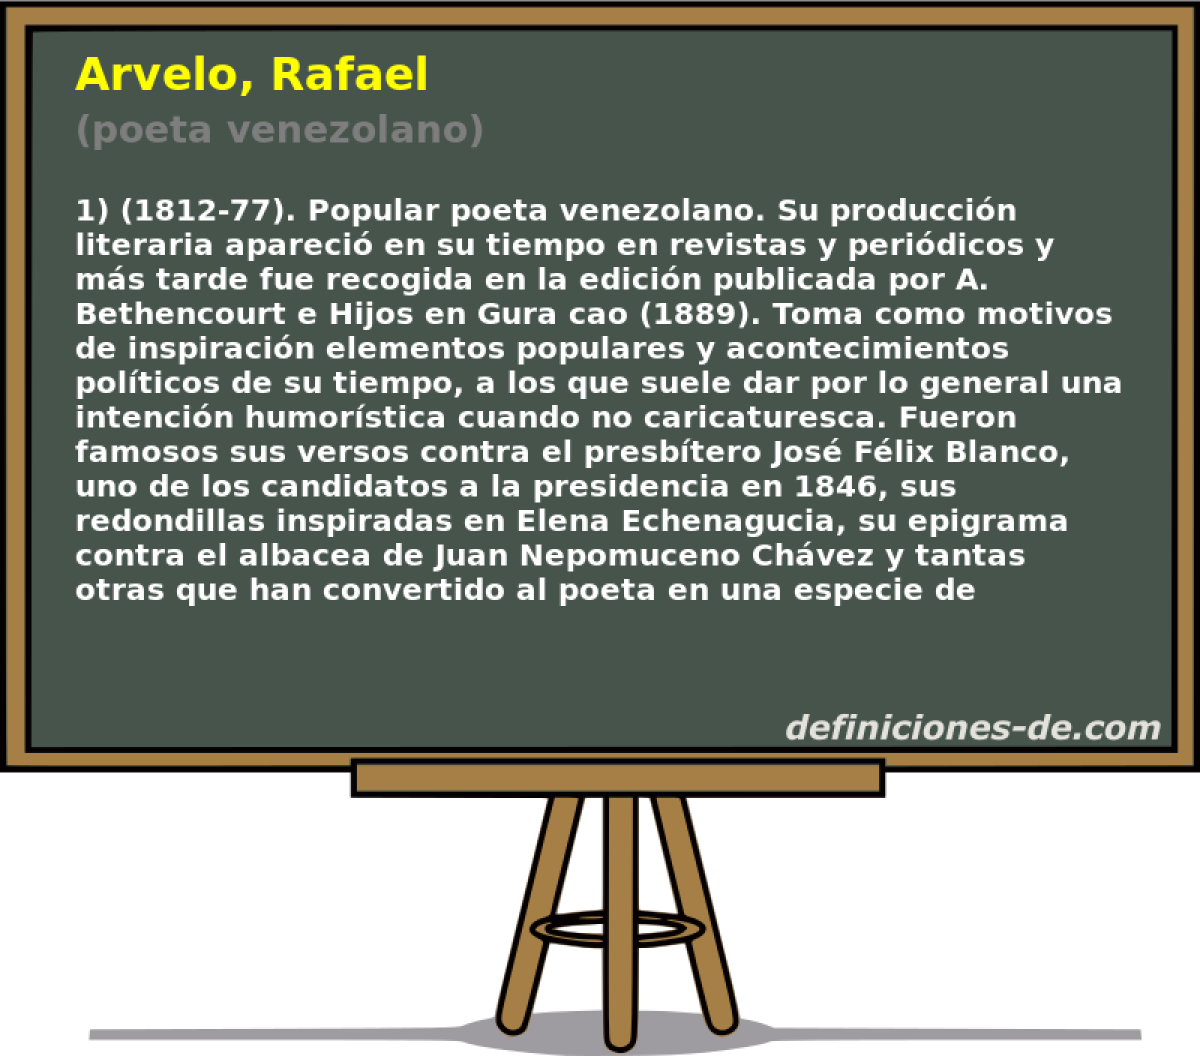 Arvelo, Rafael (poeta venezolano)